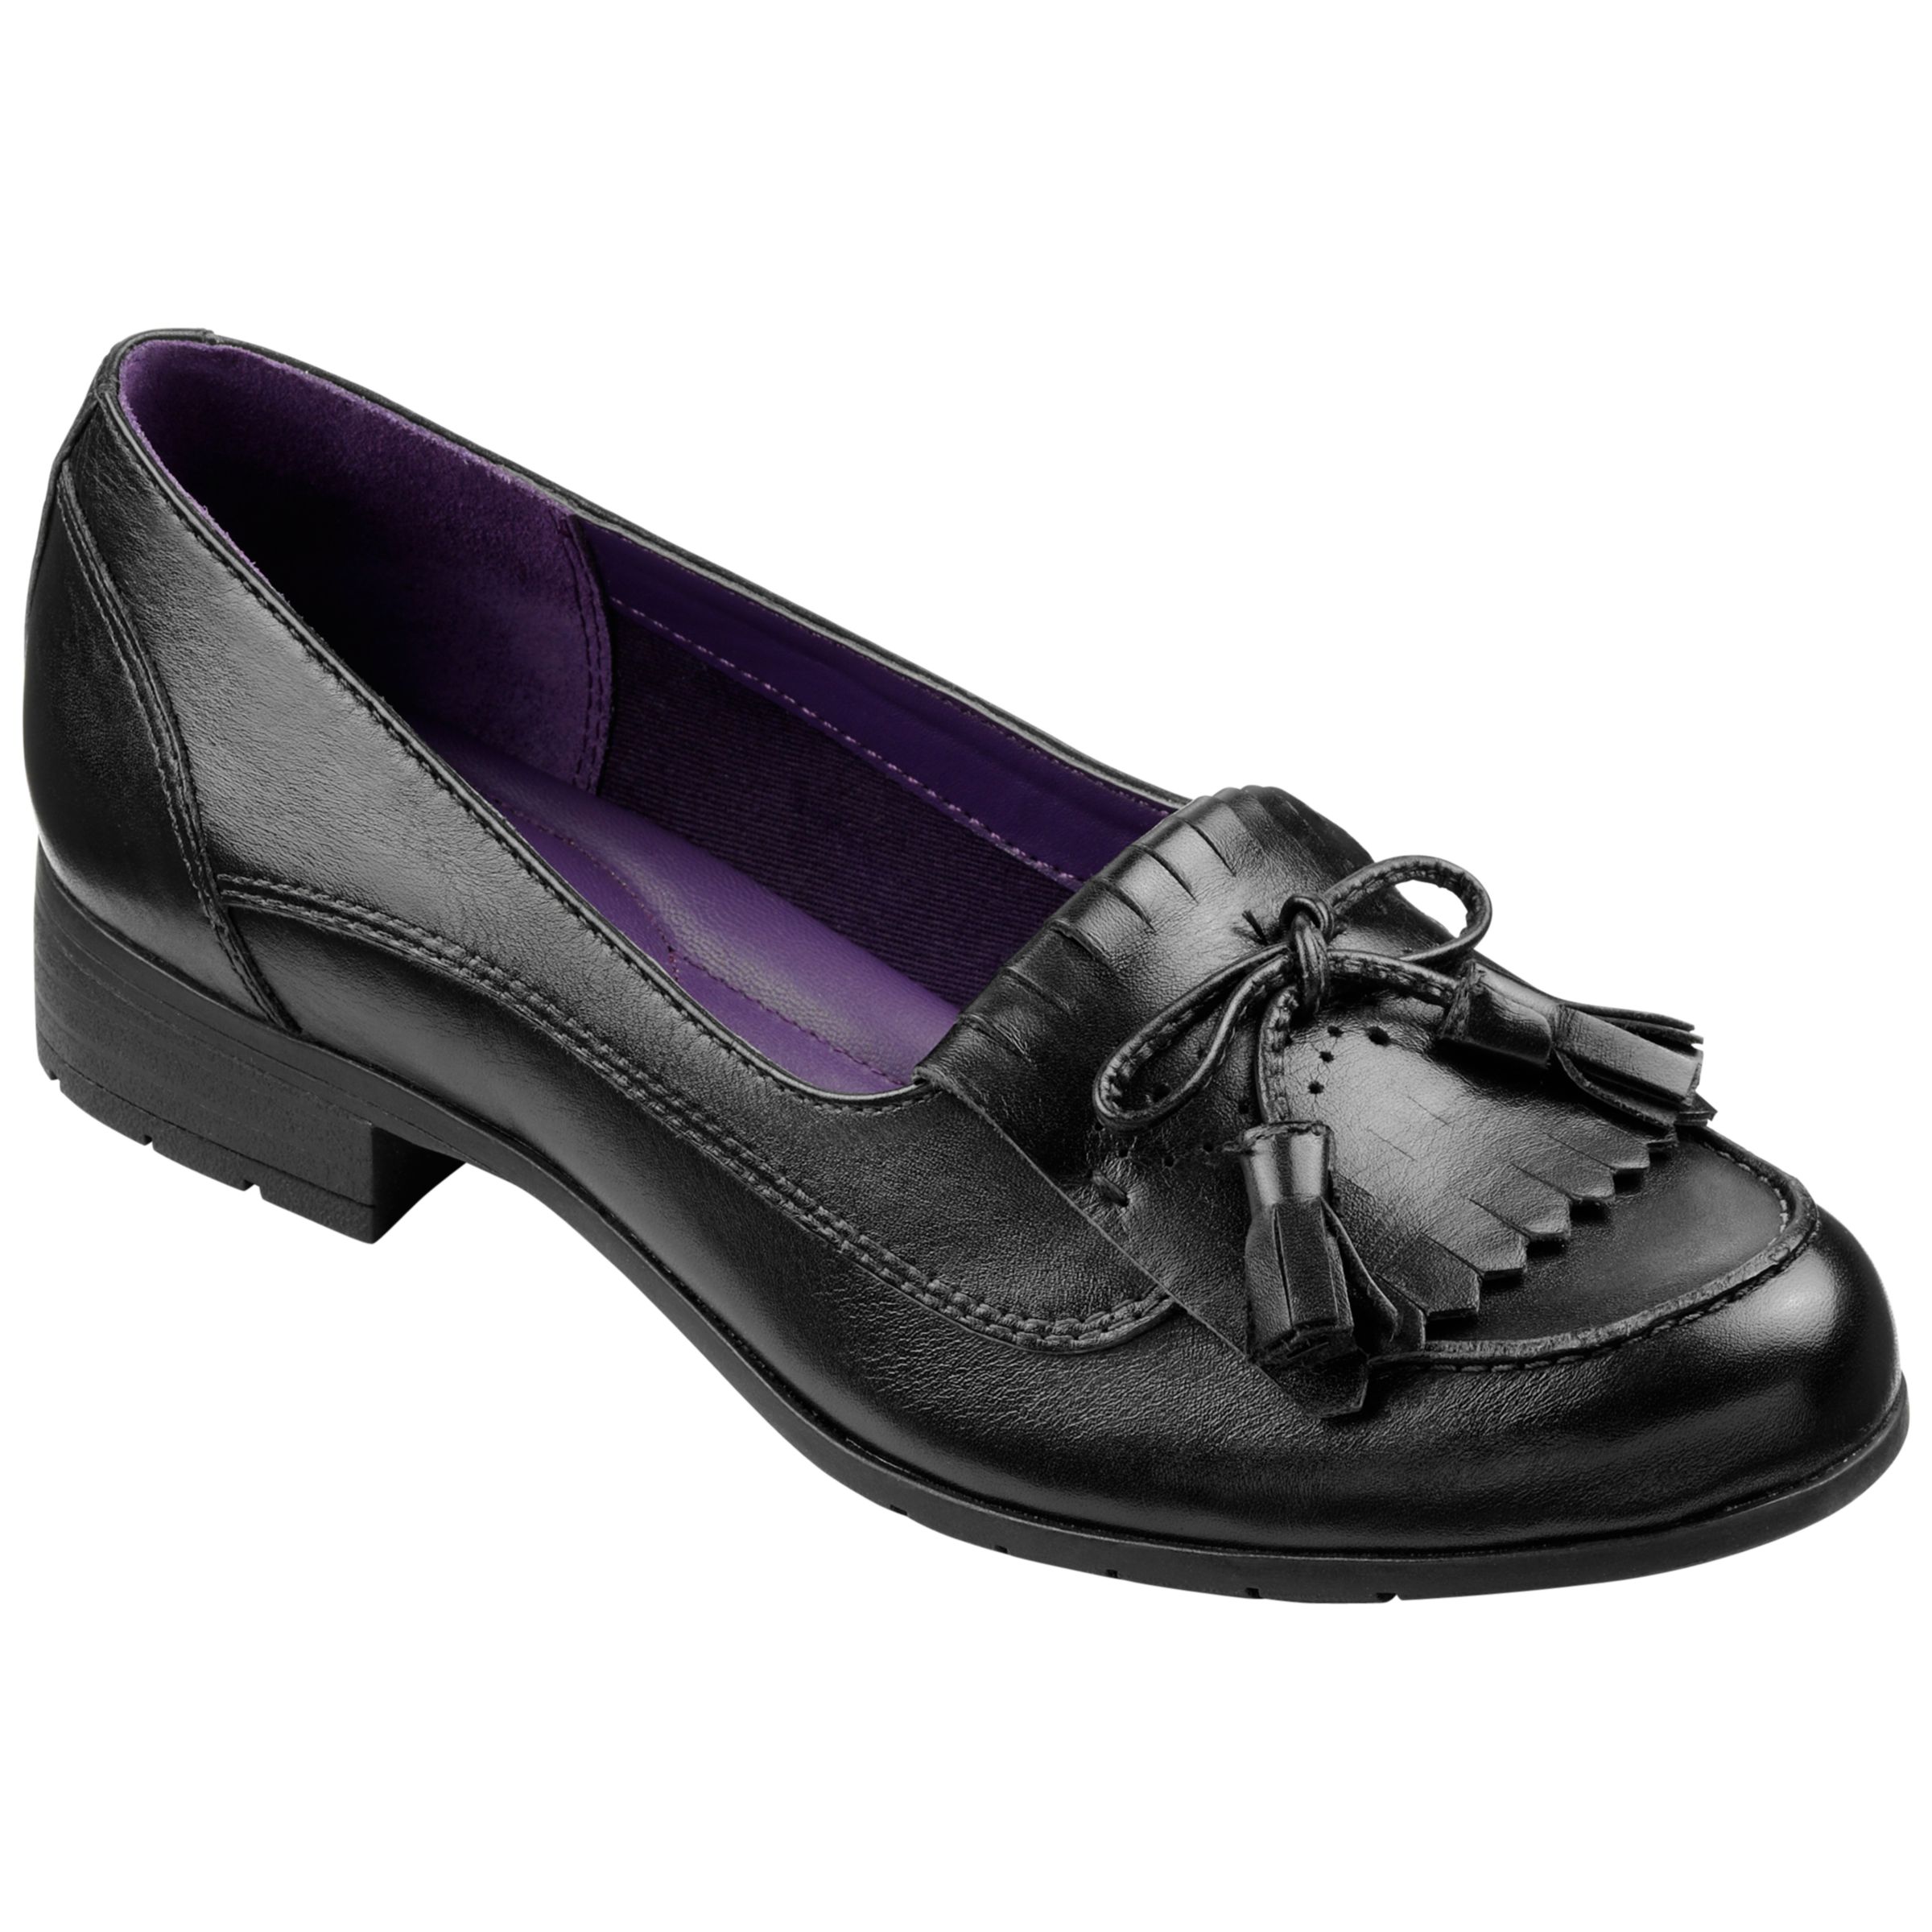 hotter violet shoes